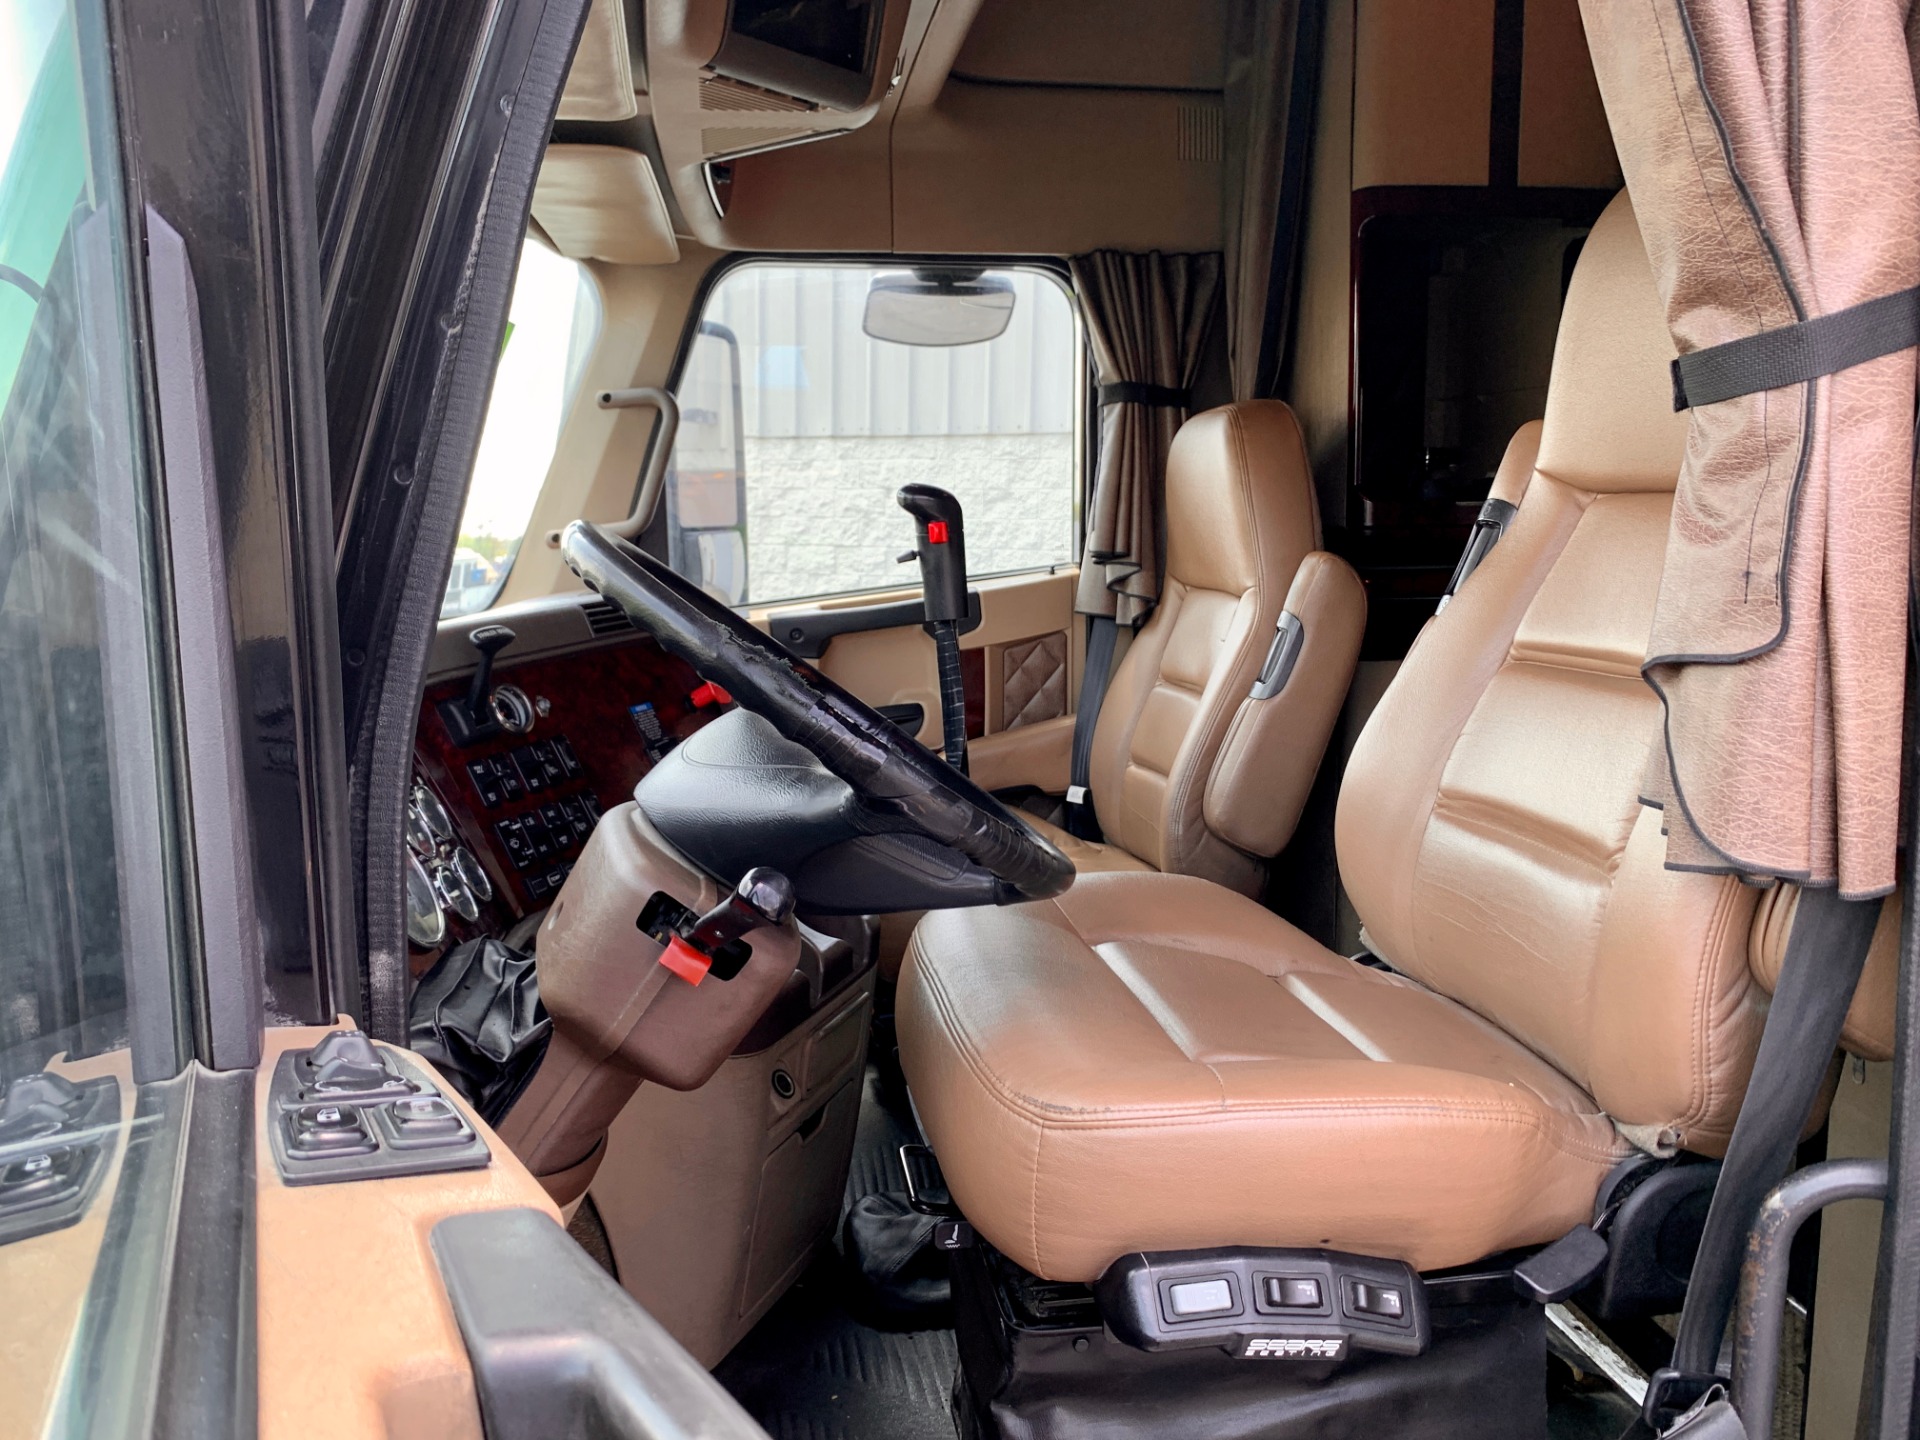 Wrangler™ Series Original Custom Fit Truck Seat Covers